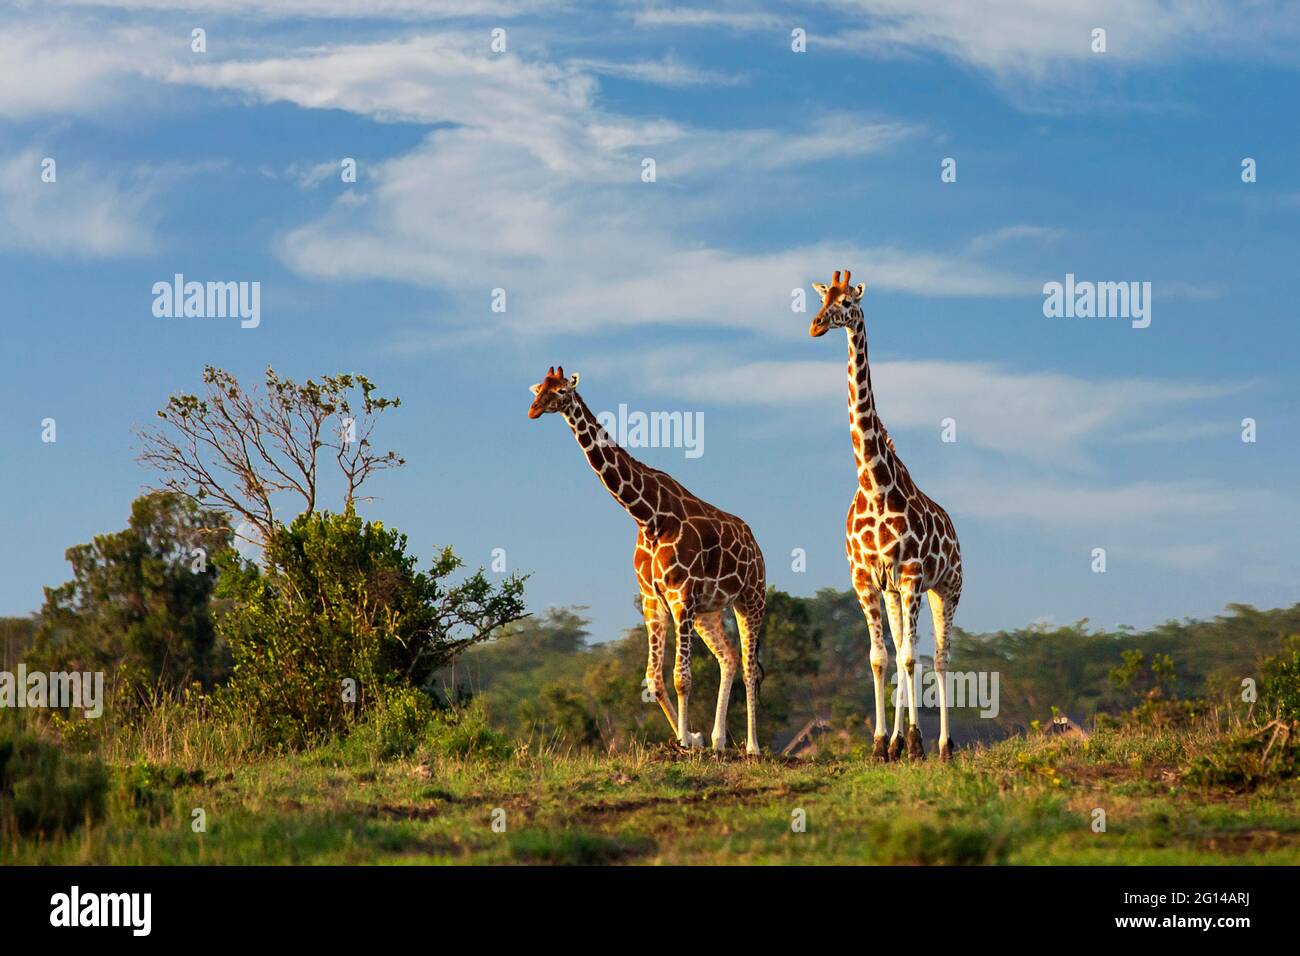 Reticulated giraffes in Sweetwaters, Ol Pejeta, Kenya, Africa Stock Photo